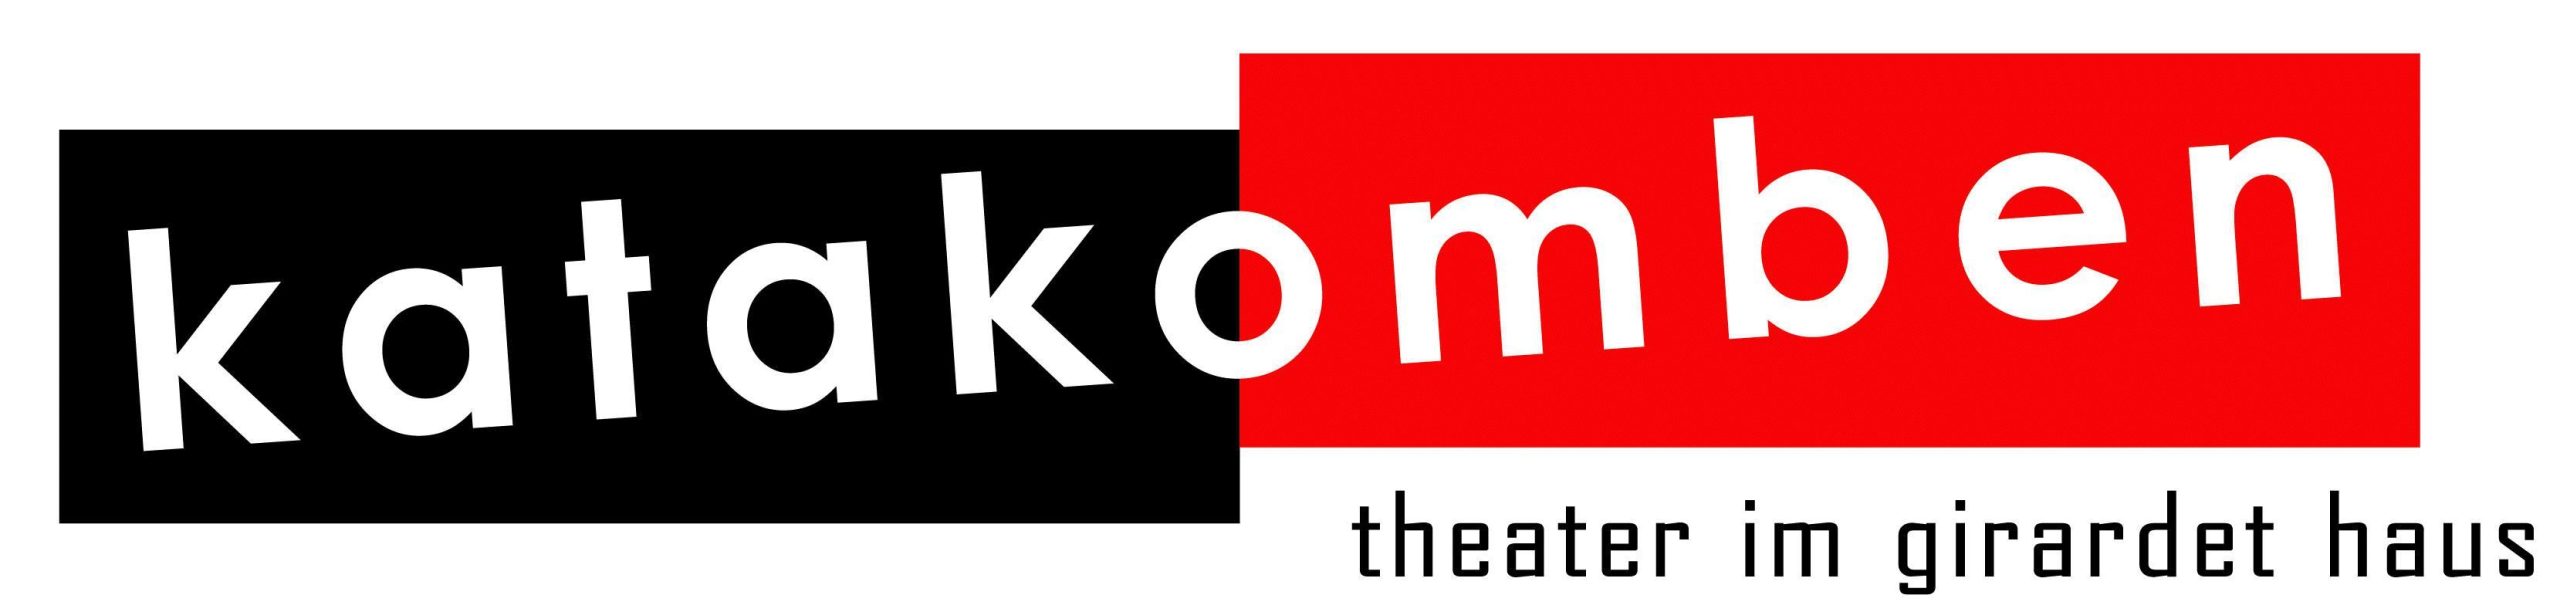 Katakomben Theater